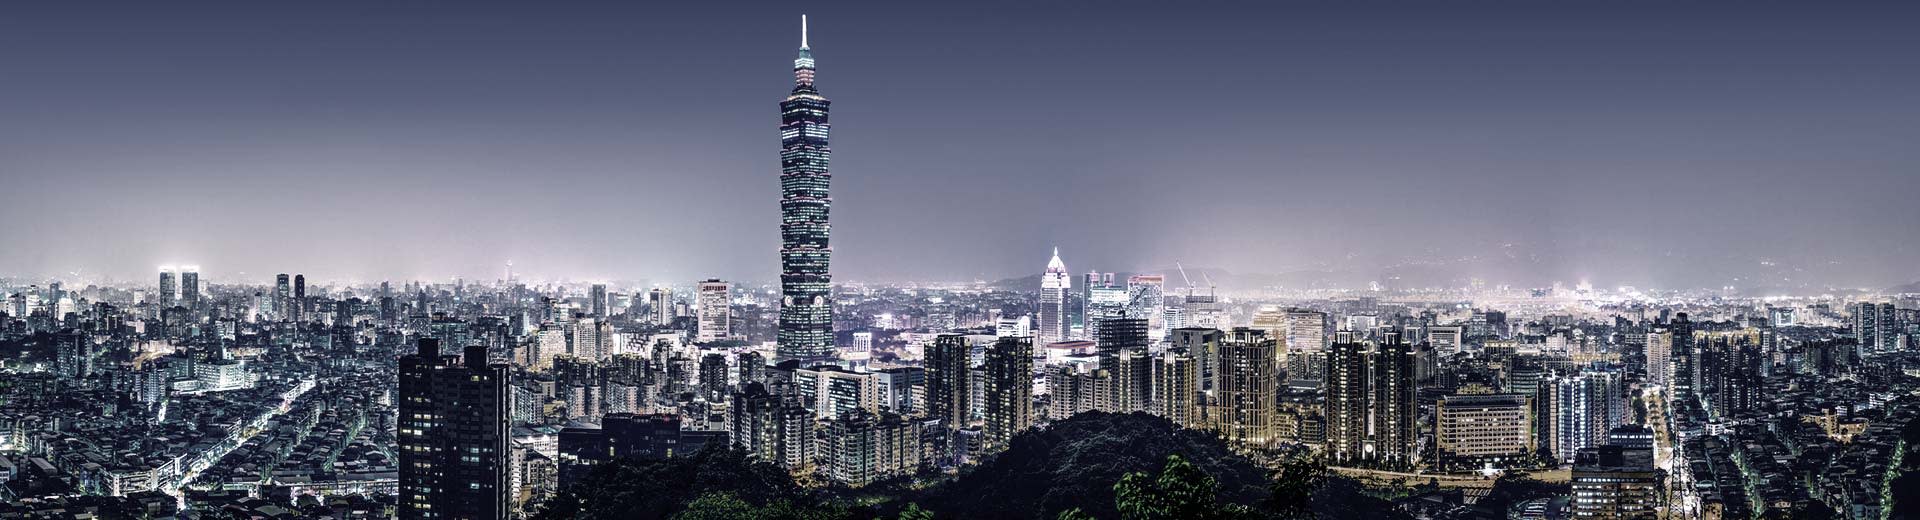 台北的城市景观熠熠生辉，数不清的摩天大楼和高层公寓尽收眼底。